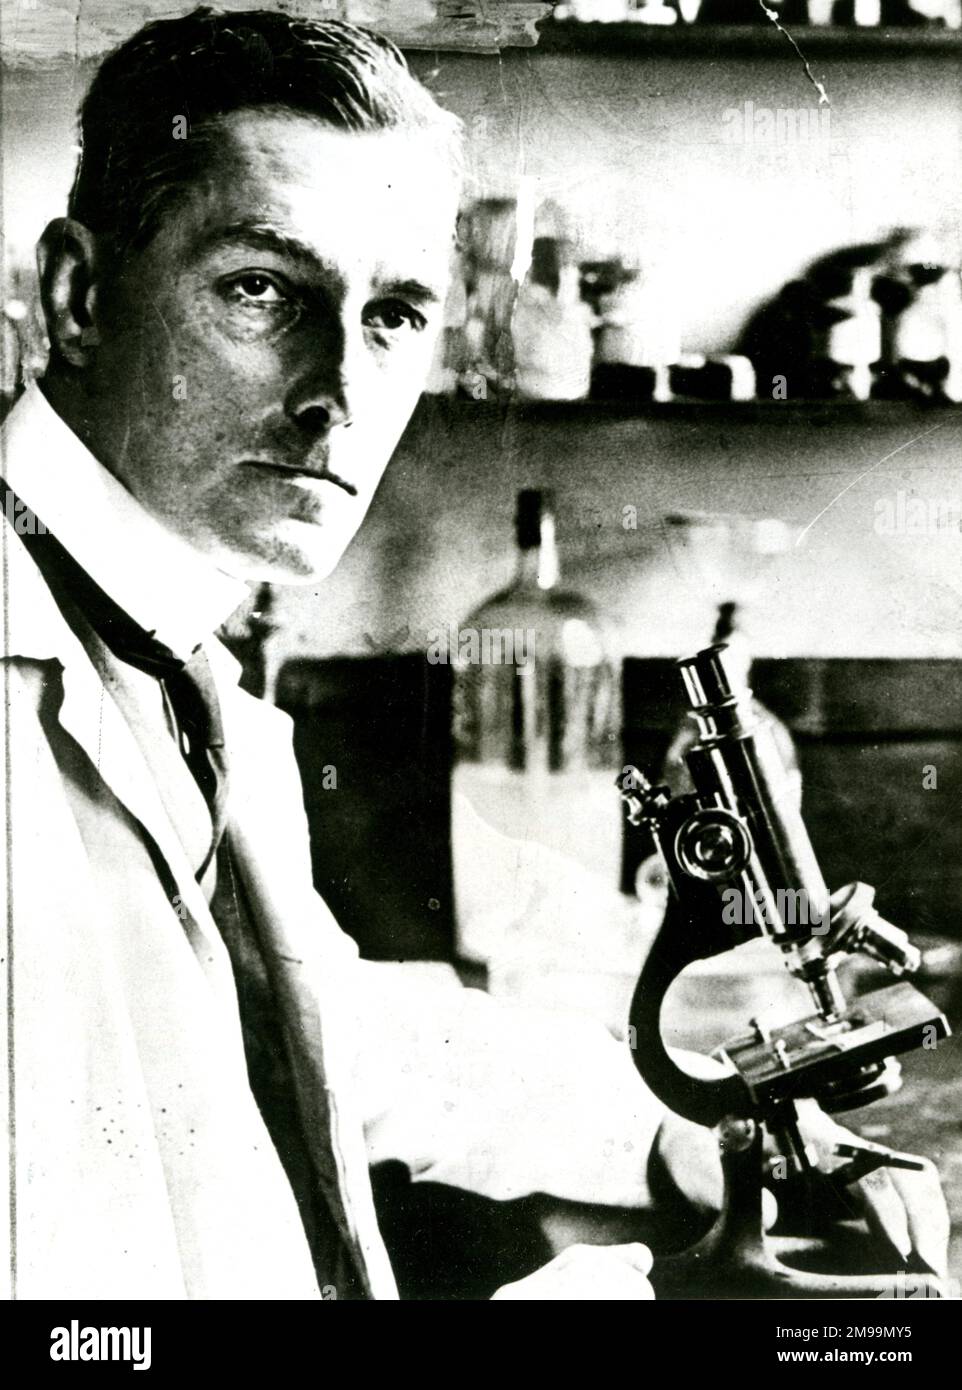 Sir Bernard Henry Spilsbury (1877-1947), britischer Pathologe, der an einer Reihe berühmter Mordfälle arbeitete, darunter Dr. Crippen, die Brides in den Bath-Serienmorden, Louis Voisin und der Charing Cross-Trunk-Mord. Er spielte auch eine wichtige Rolle bei Fehlinformationen im Krieg, Operation Hackfleisch, die später durch den Film "der Mann, der nie war" aus dem Jahr 1956 berühmt wurde. Stockfoto